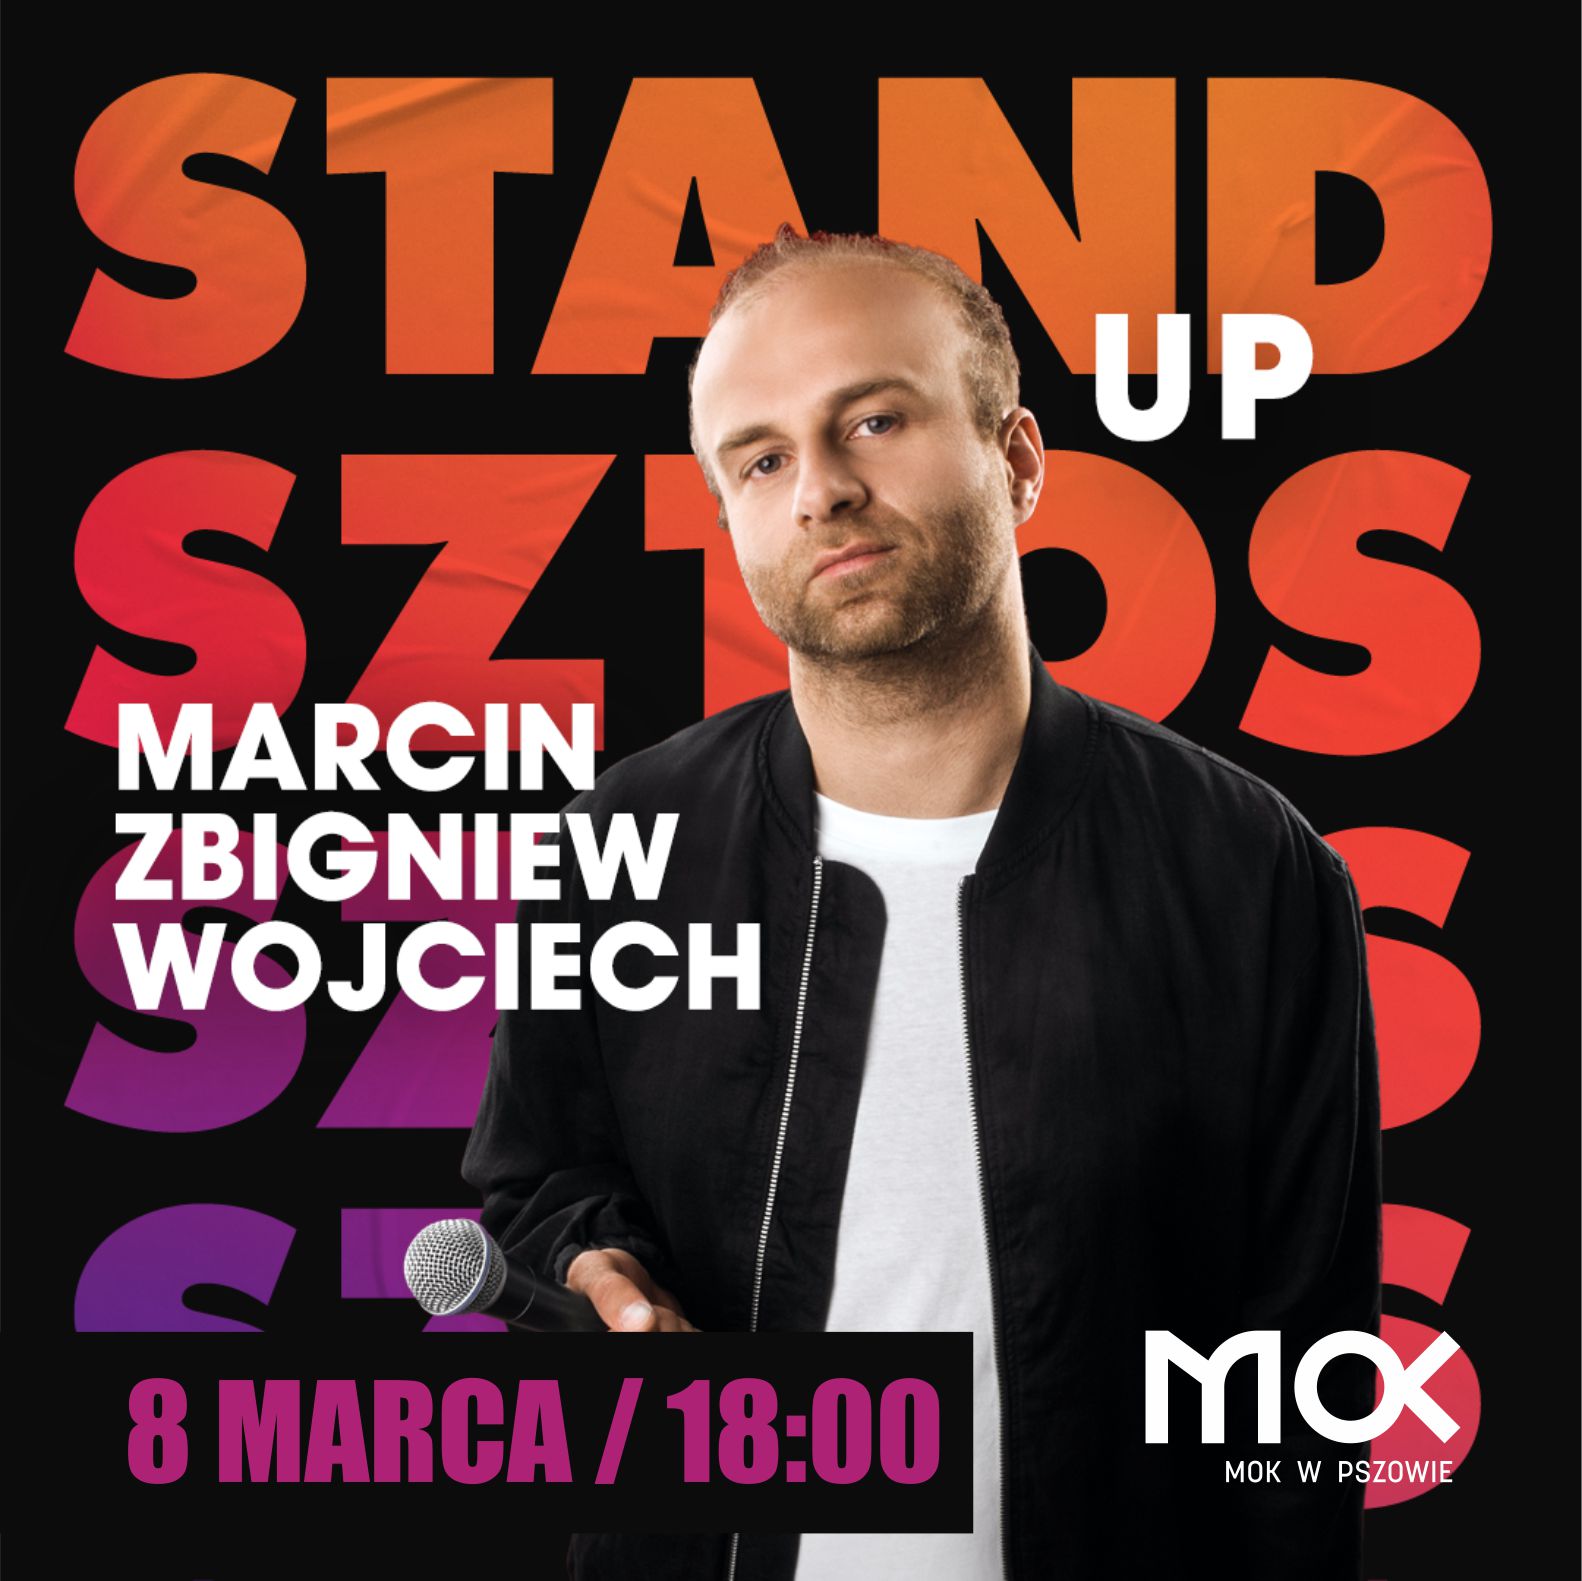 STAND UP! na Dzień Kobiet Marcin Zbigniew Wojciech